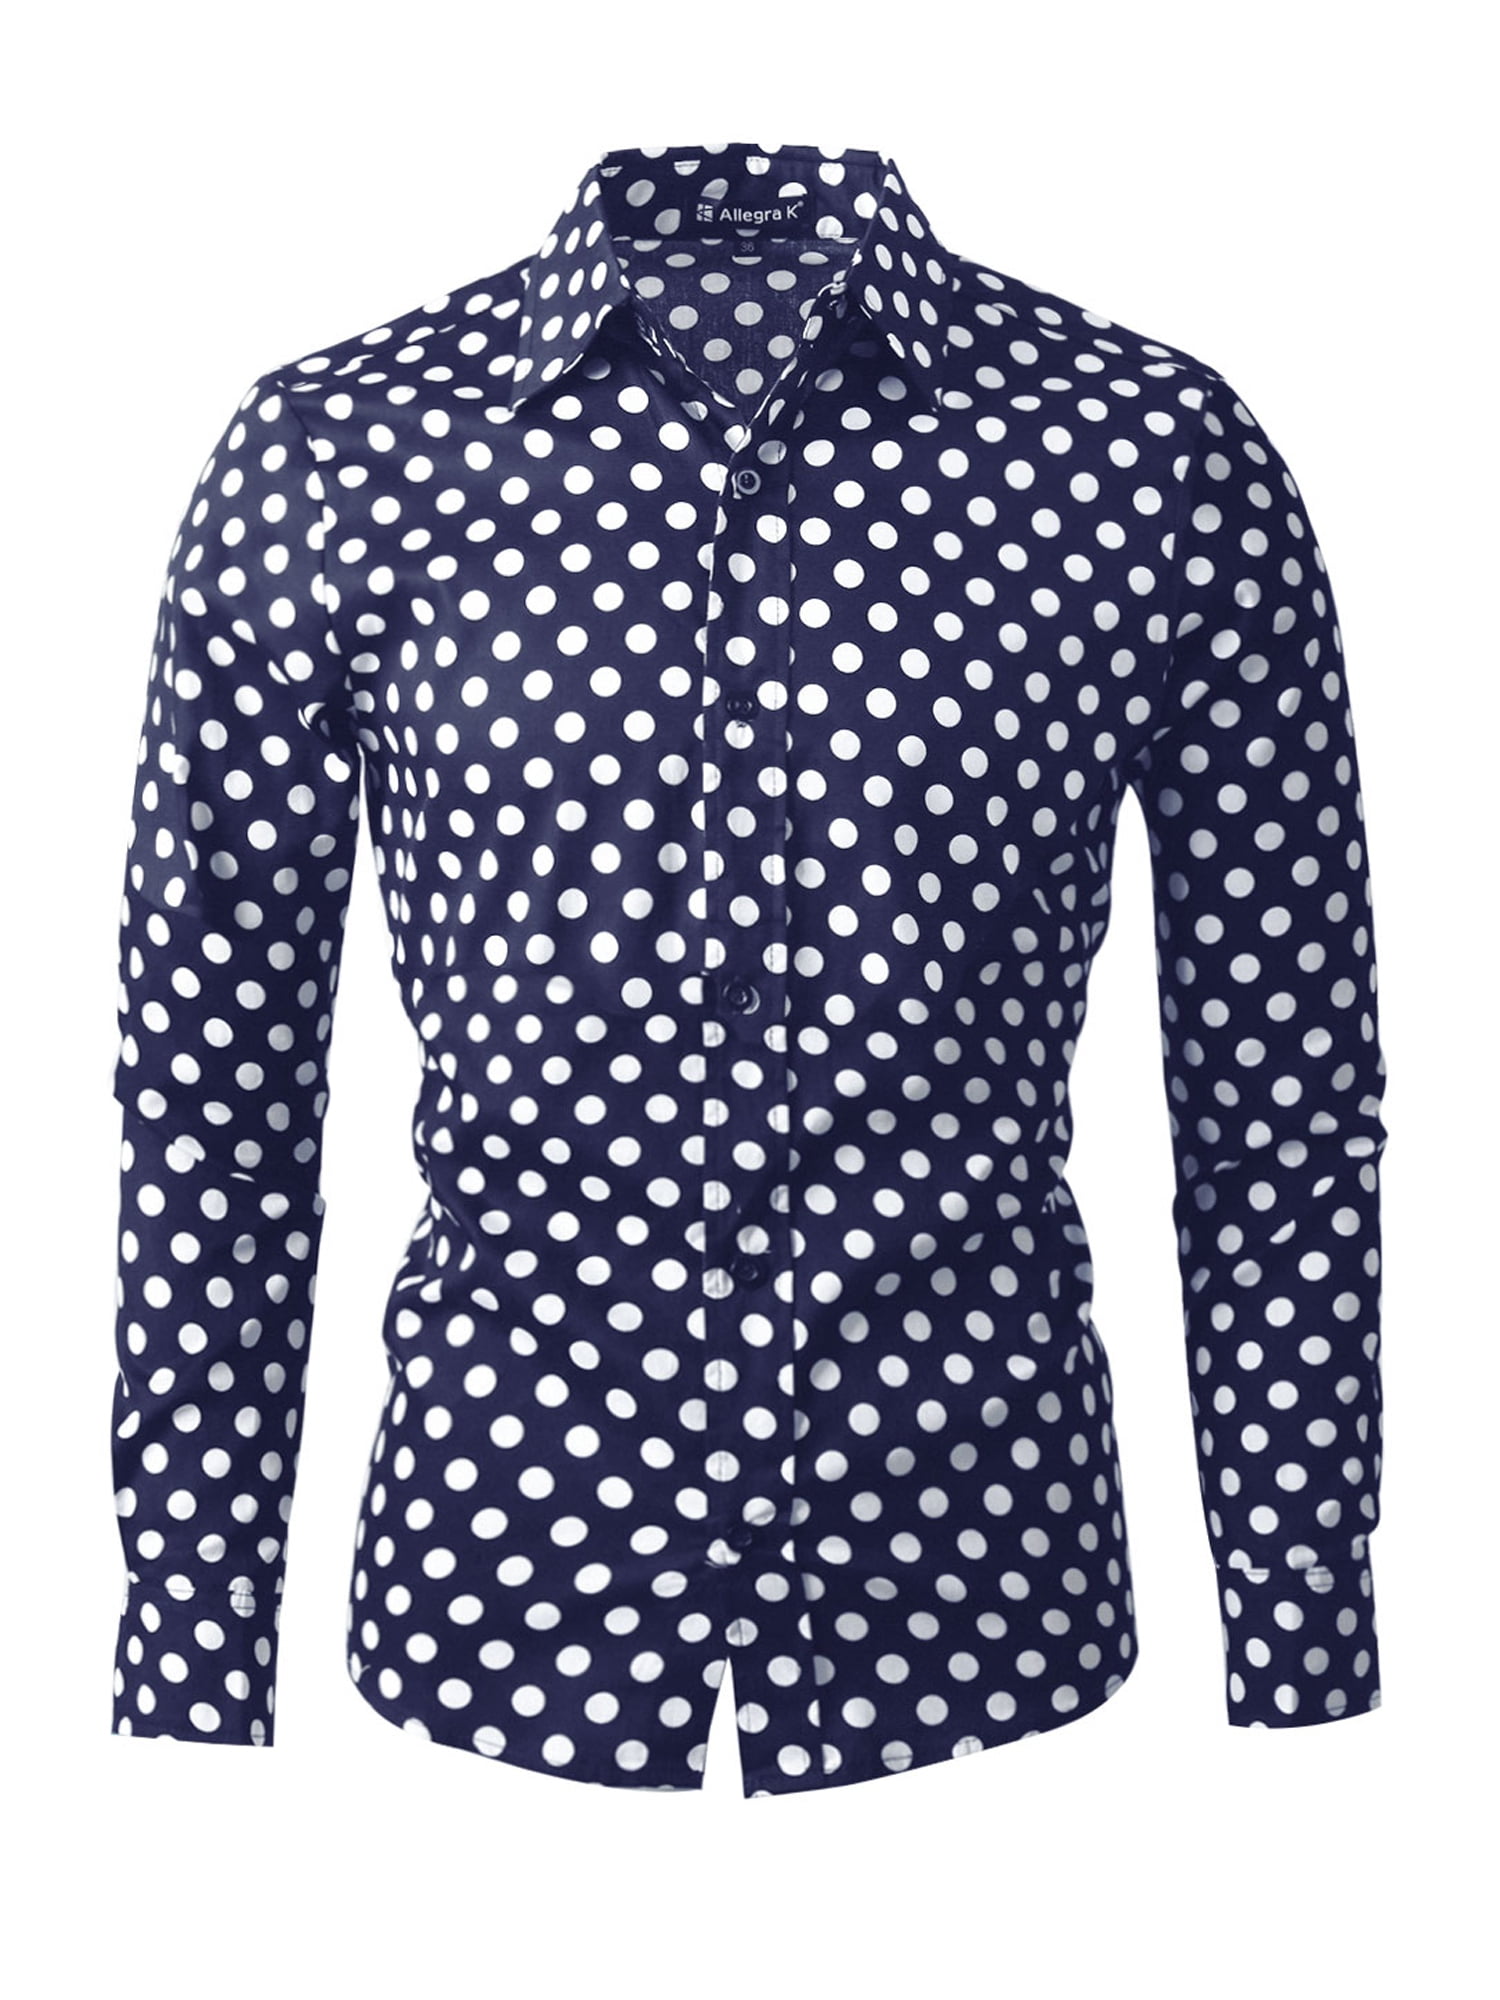 Unique Bargains - Men's Button Down Slim Fit Long Sleeve Polka Dots Dress Shirts M US 40 Navy